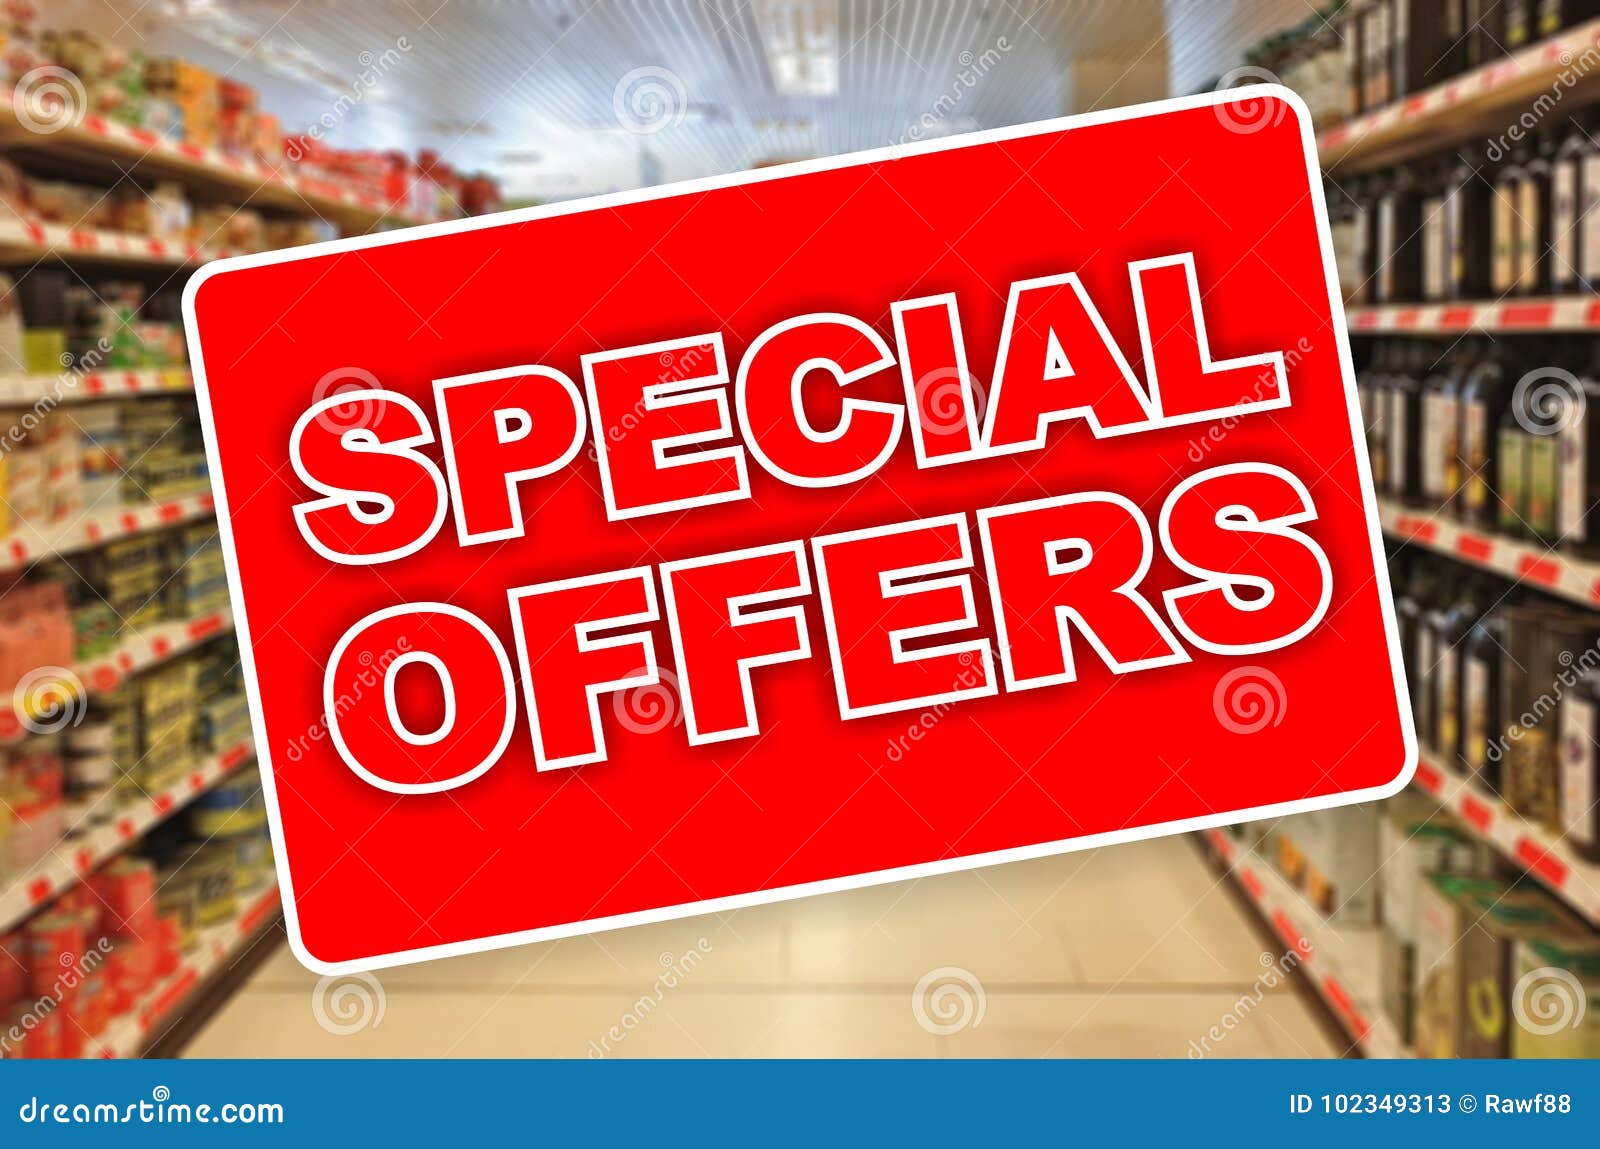 Supermercados con ofertas especiales